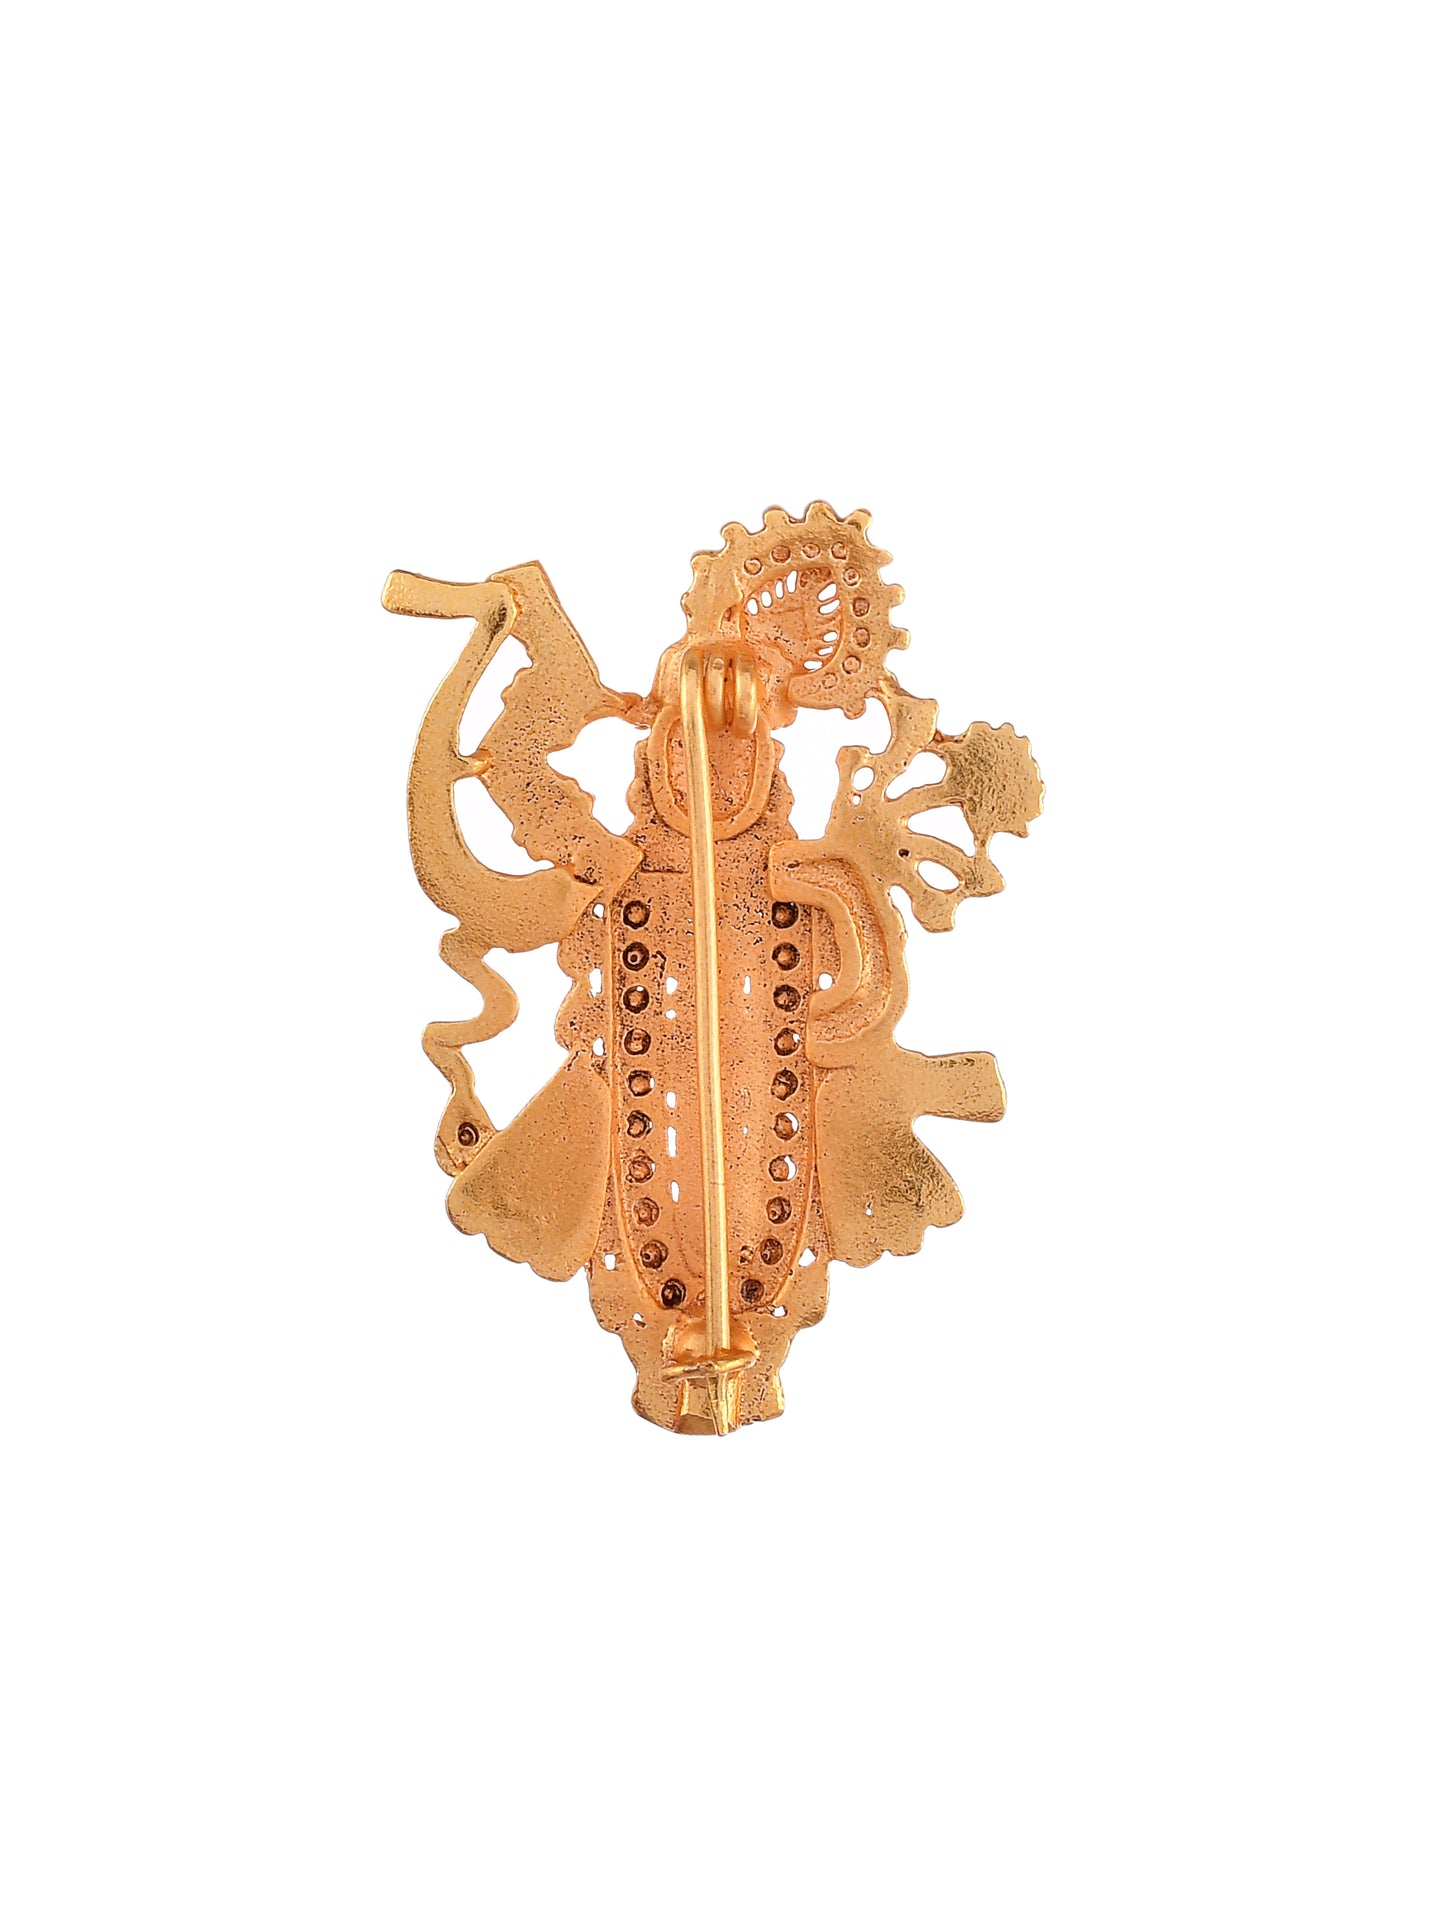 Gold plated saree pin brooch